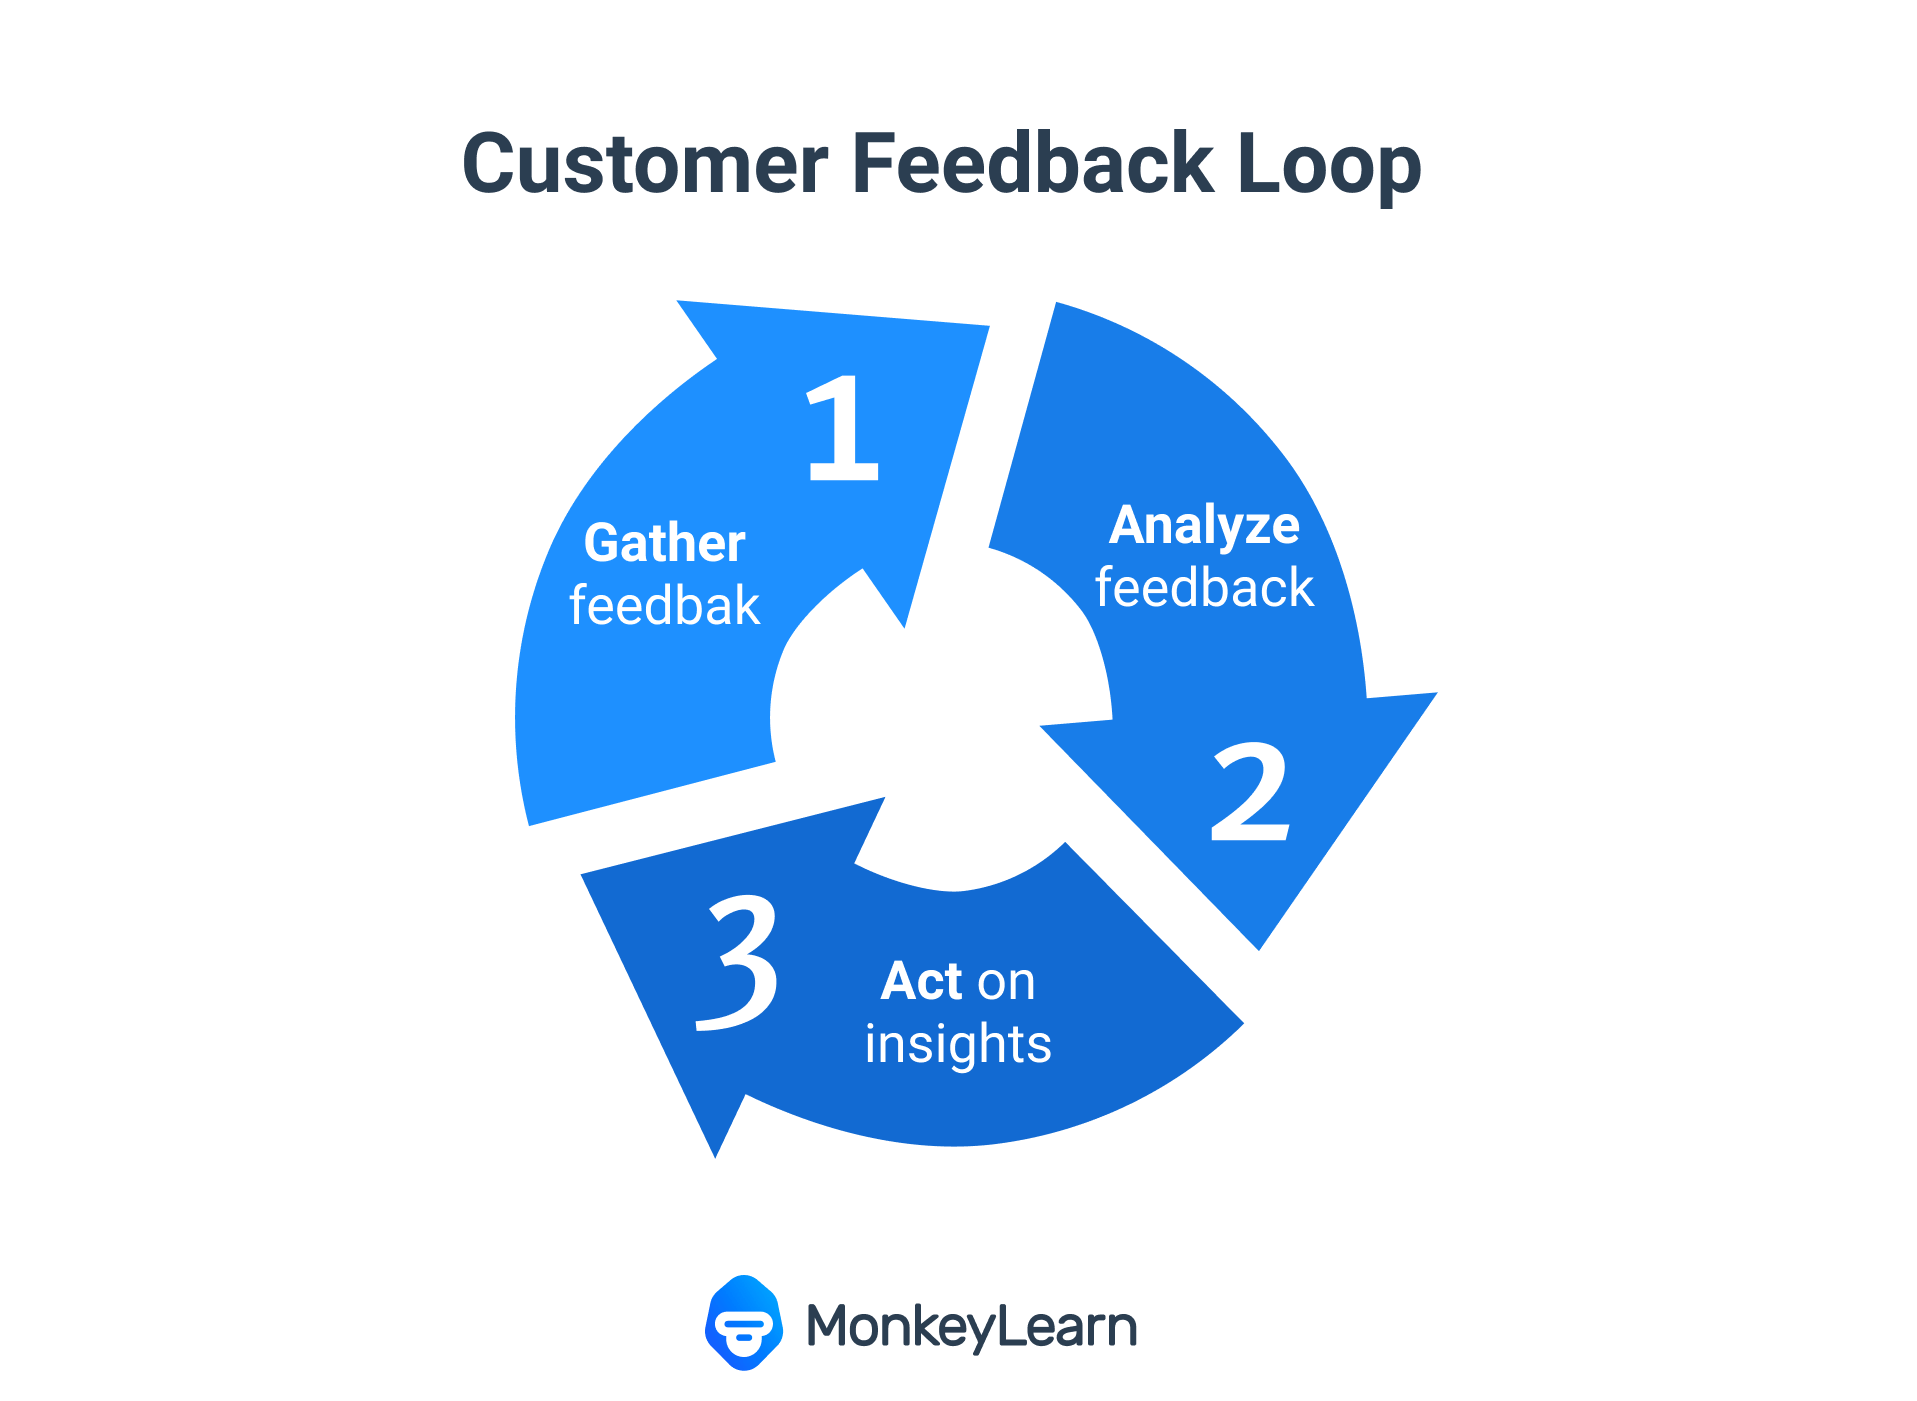 Customer Feedback Loop: gather customer feedback, analyze feedback with machine learning, act on customer feedback to close the loop.